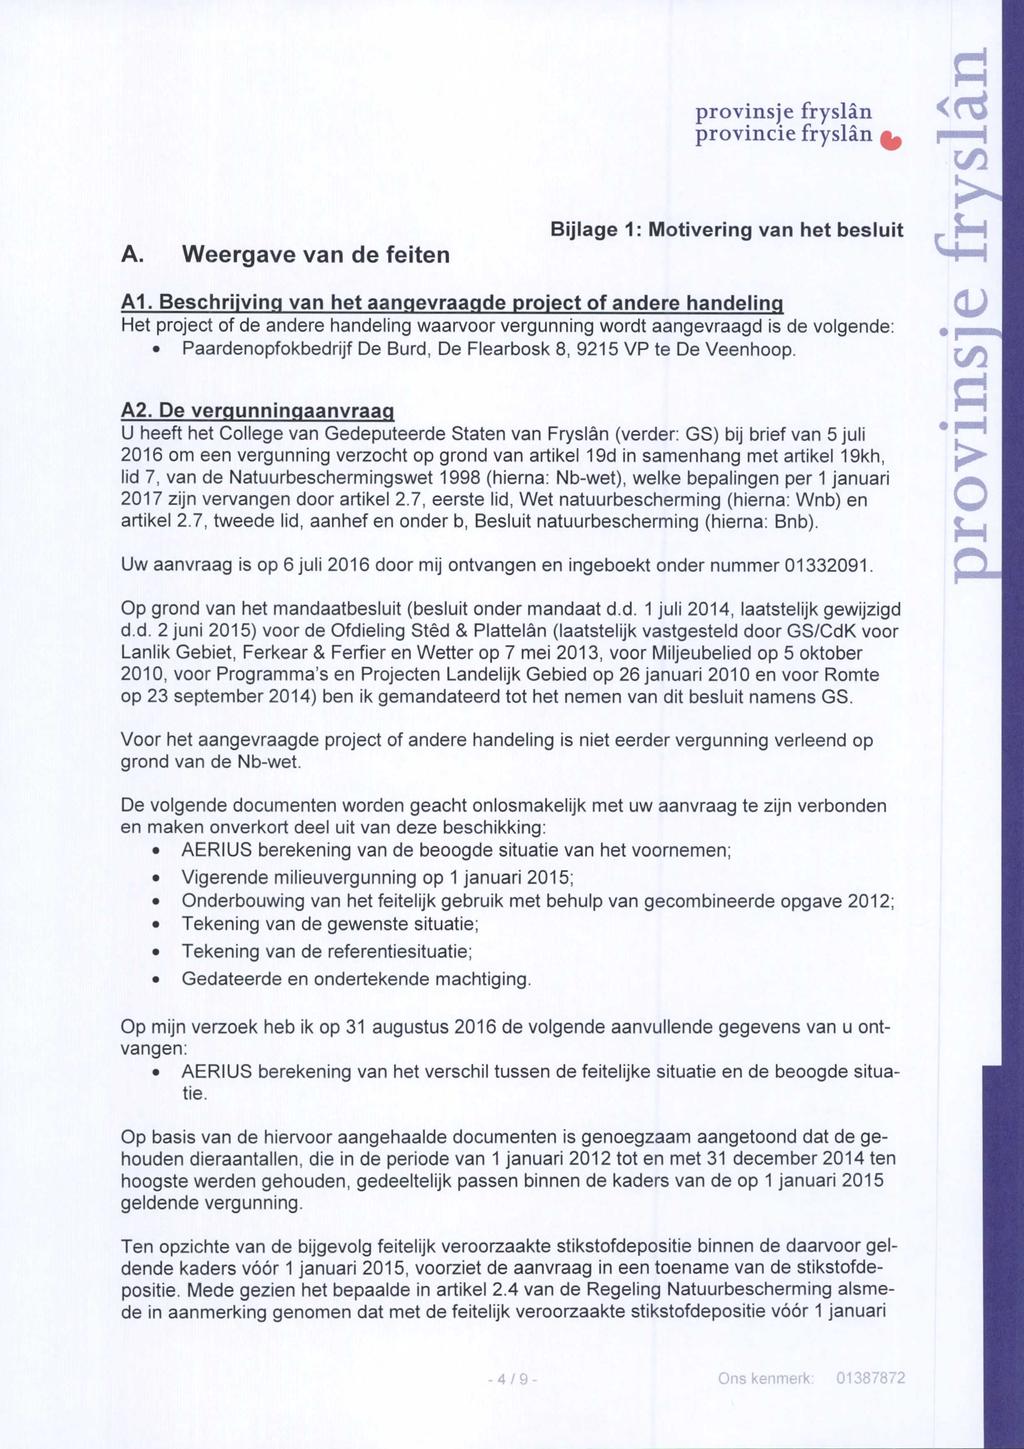 A. Weergave van de feiten provinsje fryslän Bijlage 1: Motivering van het besluit <r c/3 c ^ A1.